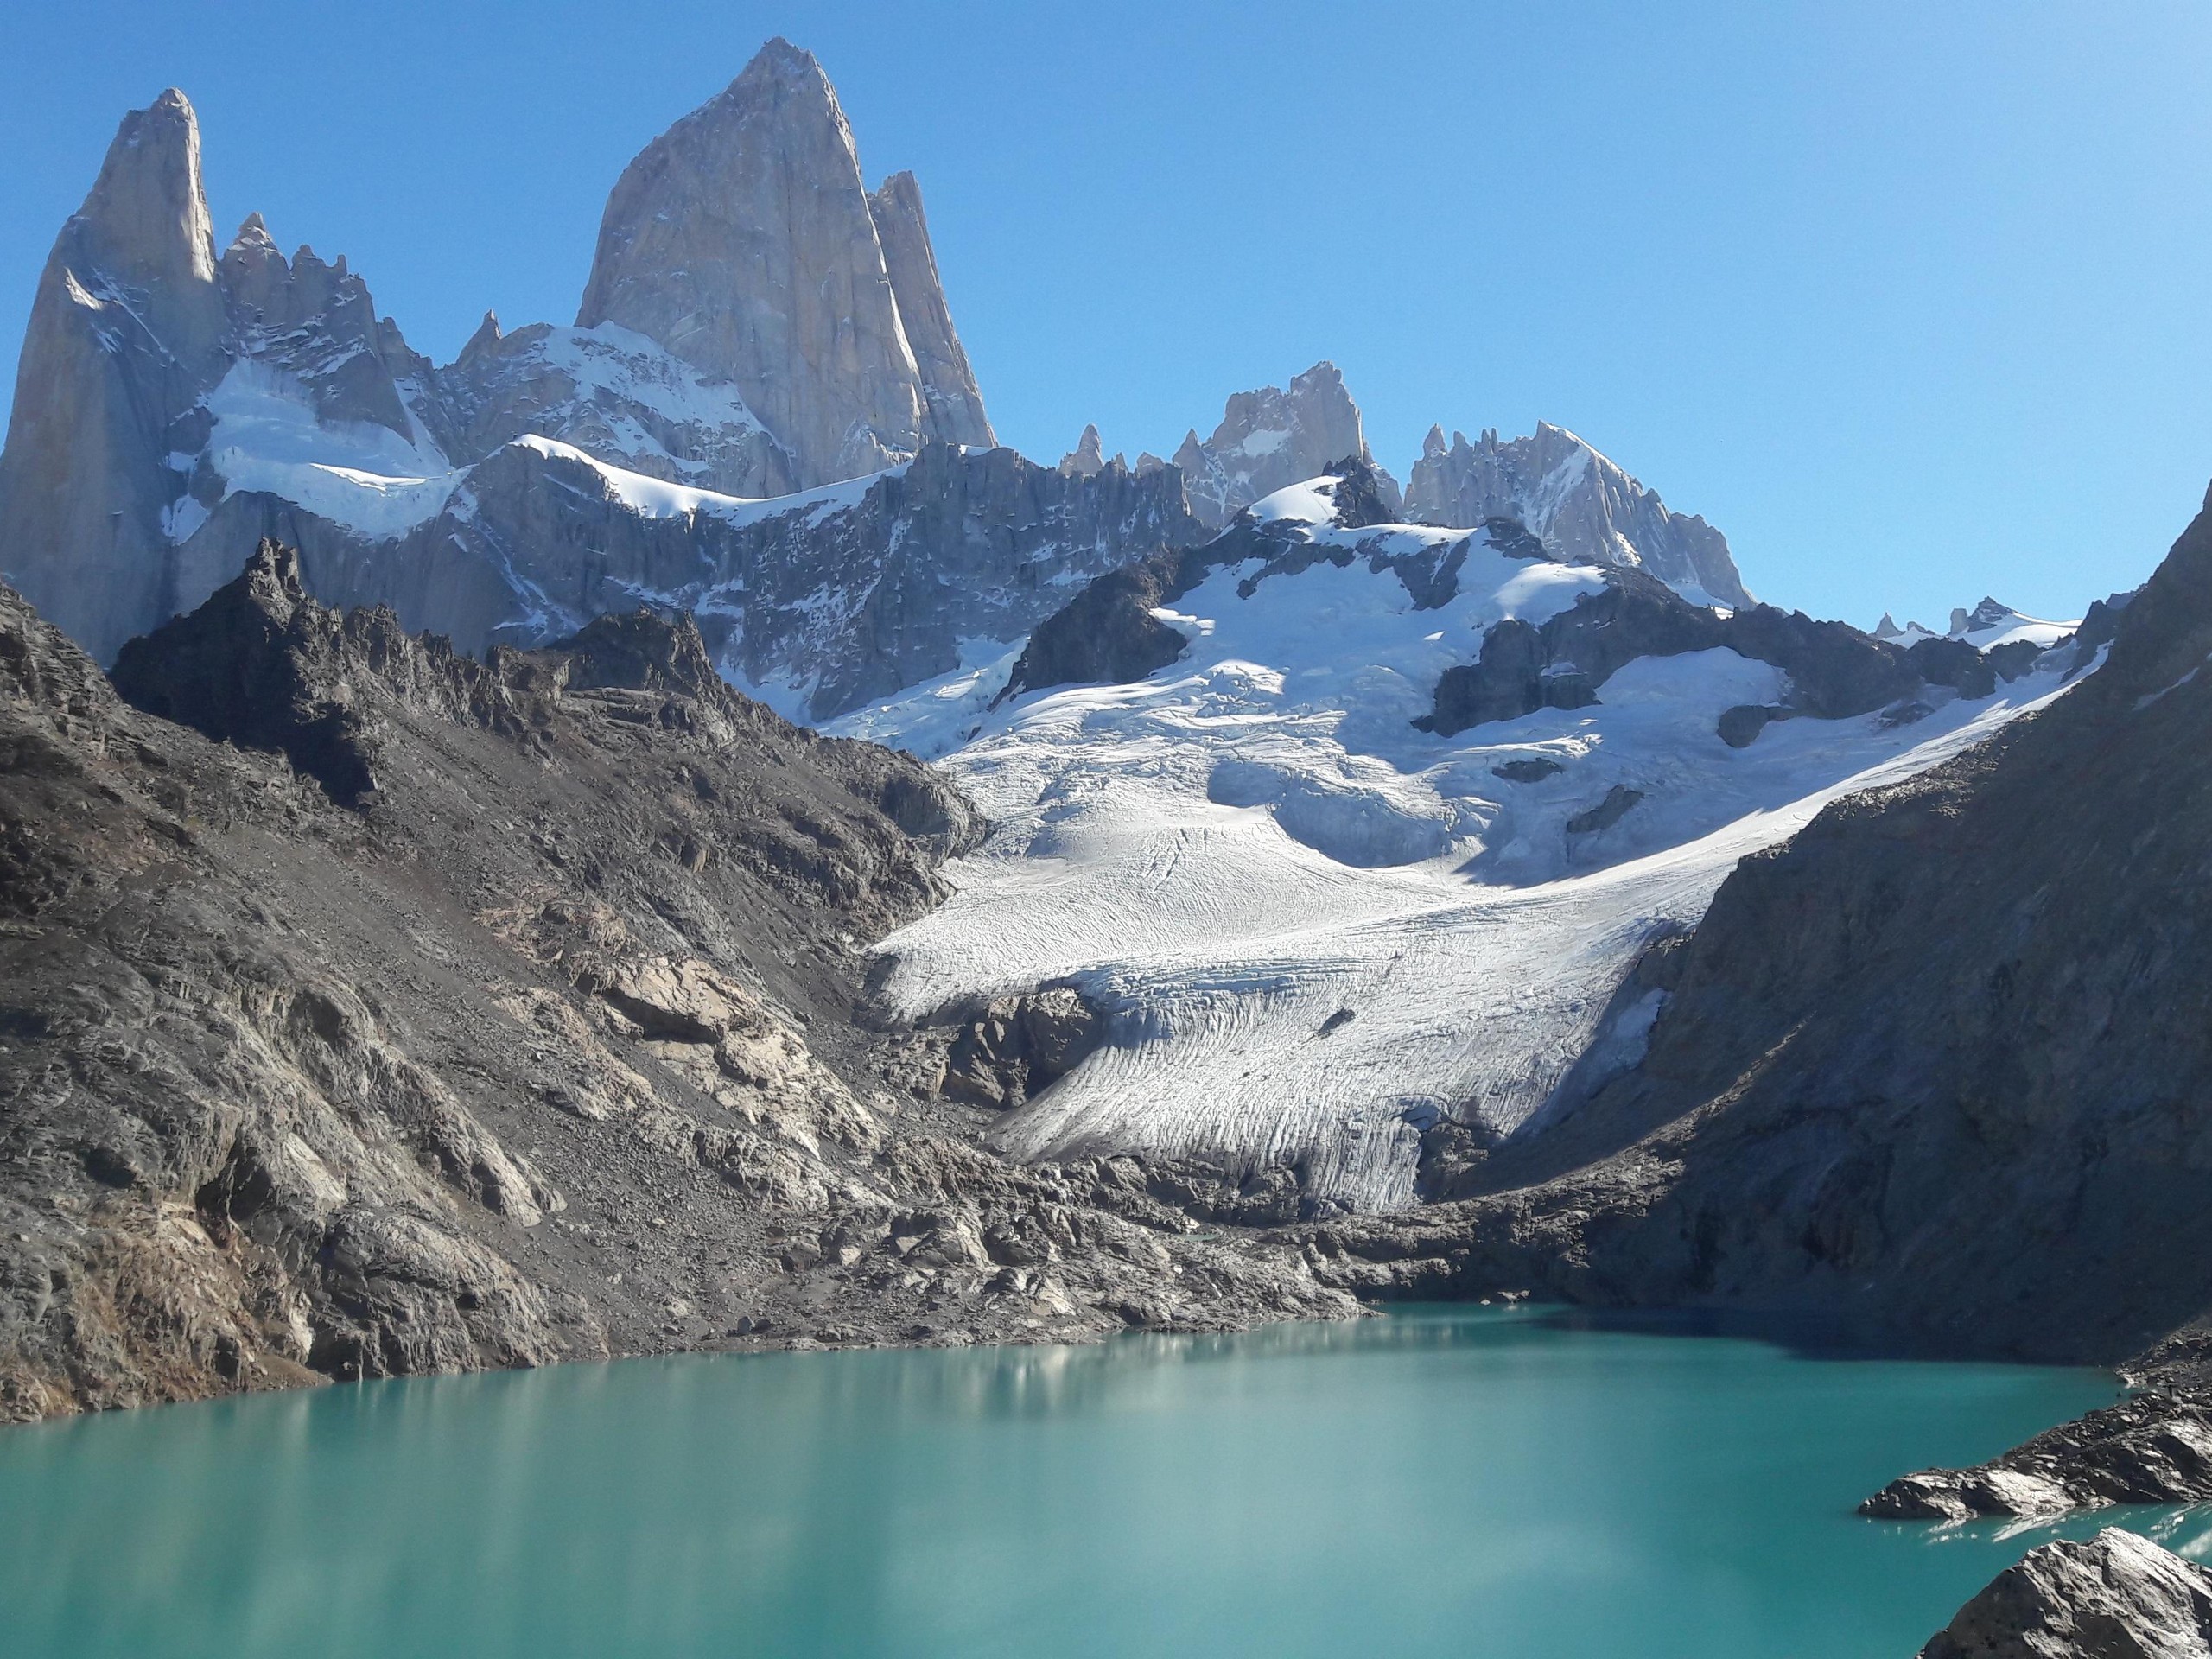 Laguna de los Tres in Patagonia